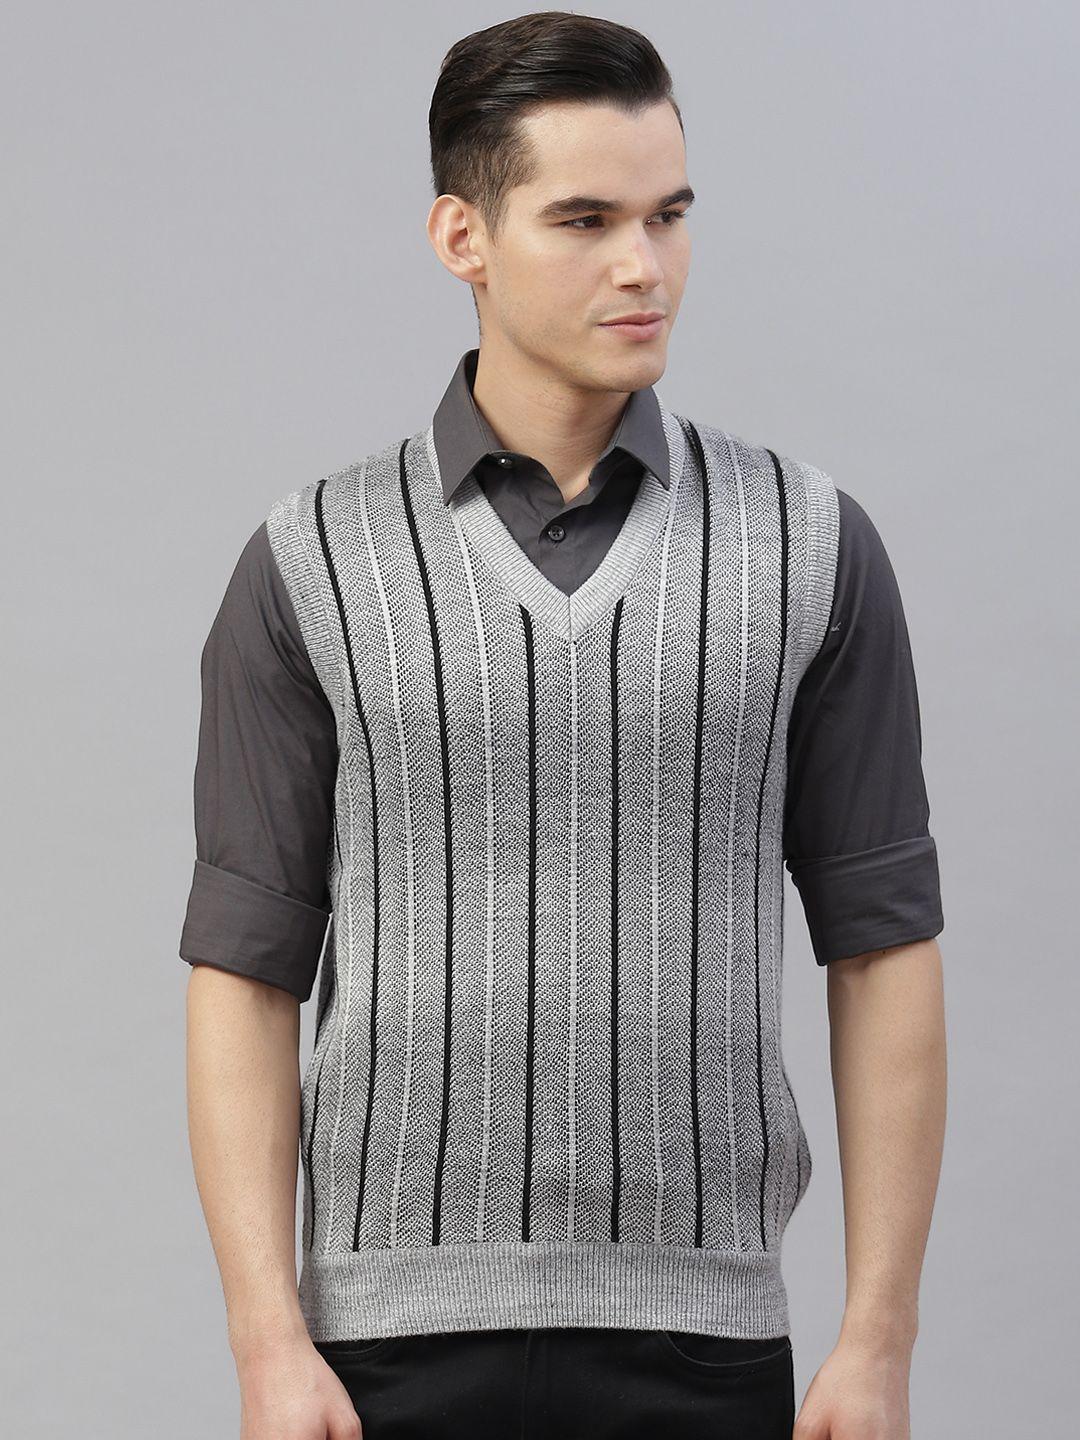 pierre carlo men grey & black striped sweater vest